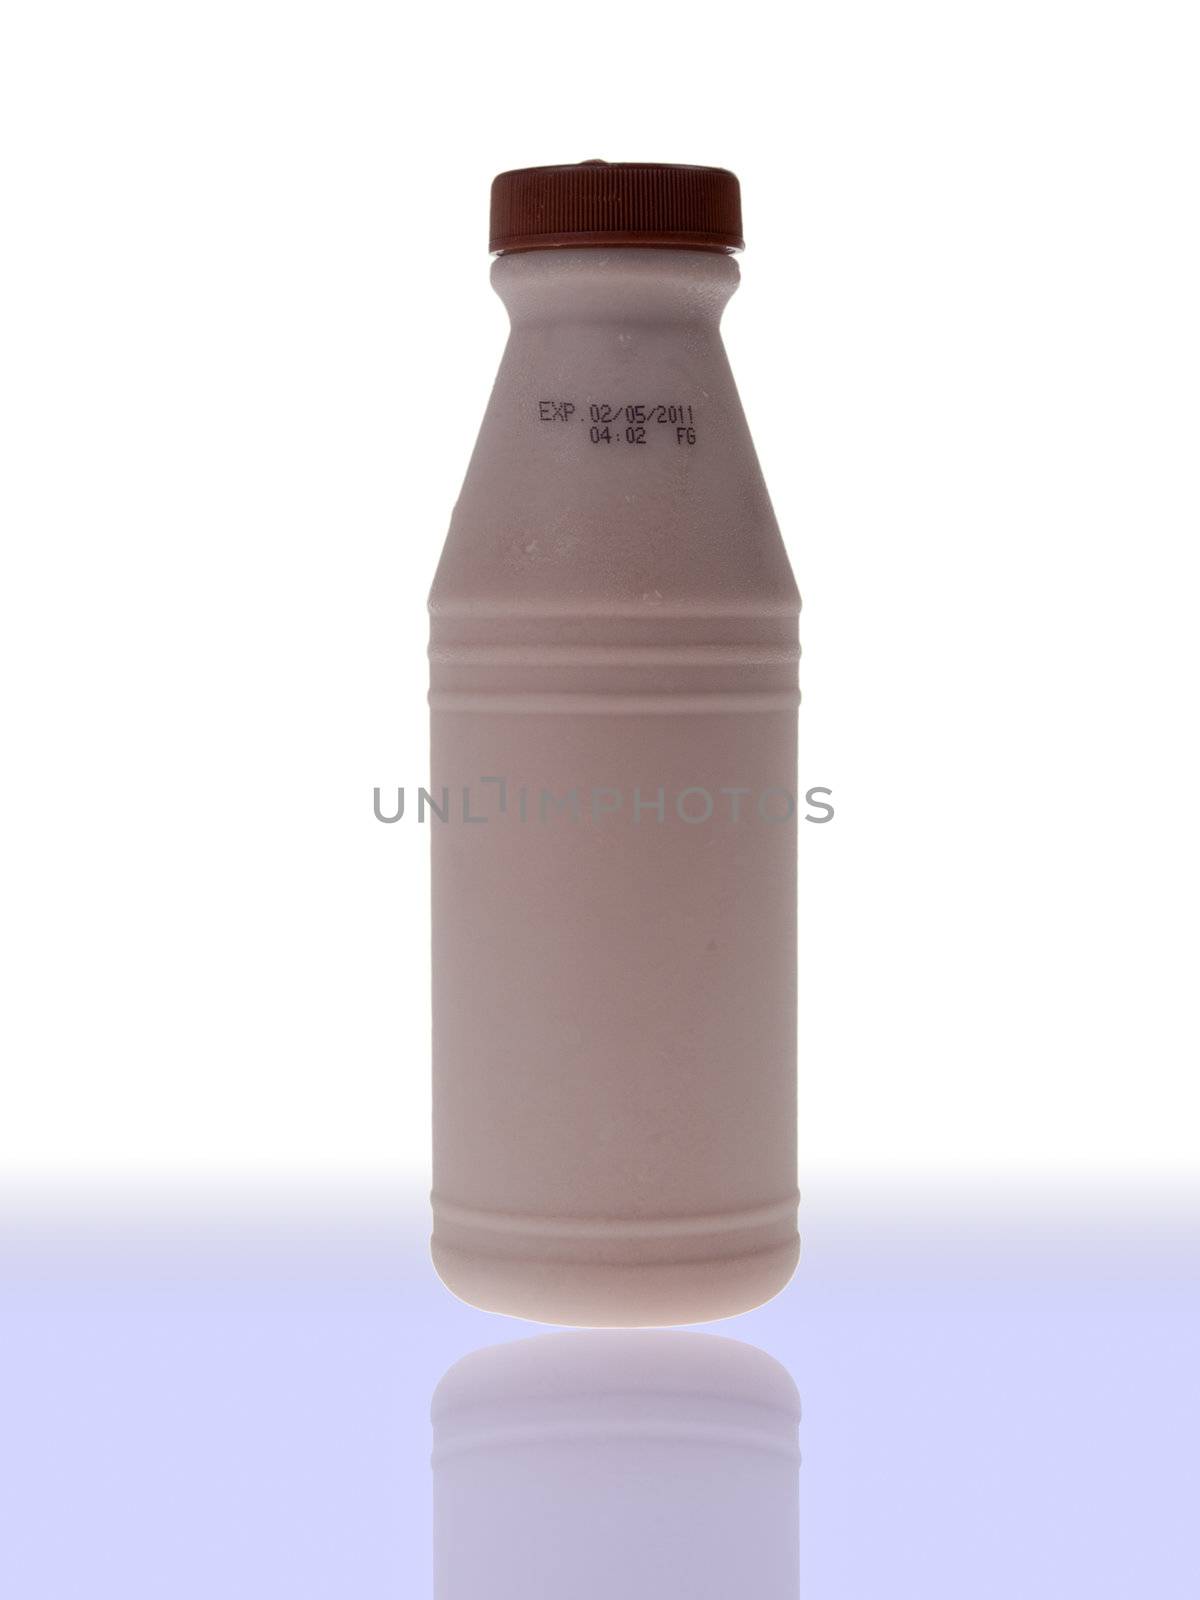 Bottle of fresh milk by FrameAngel